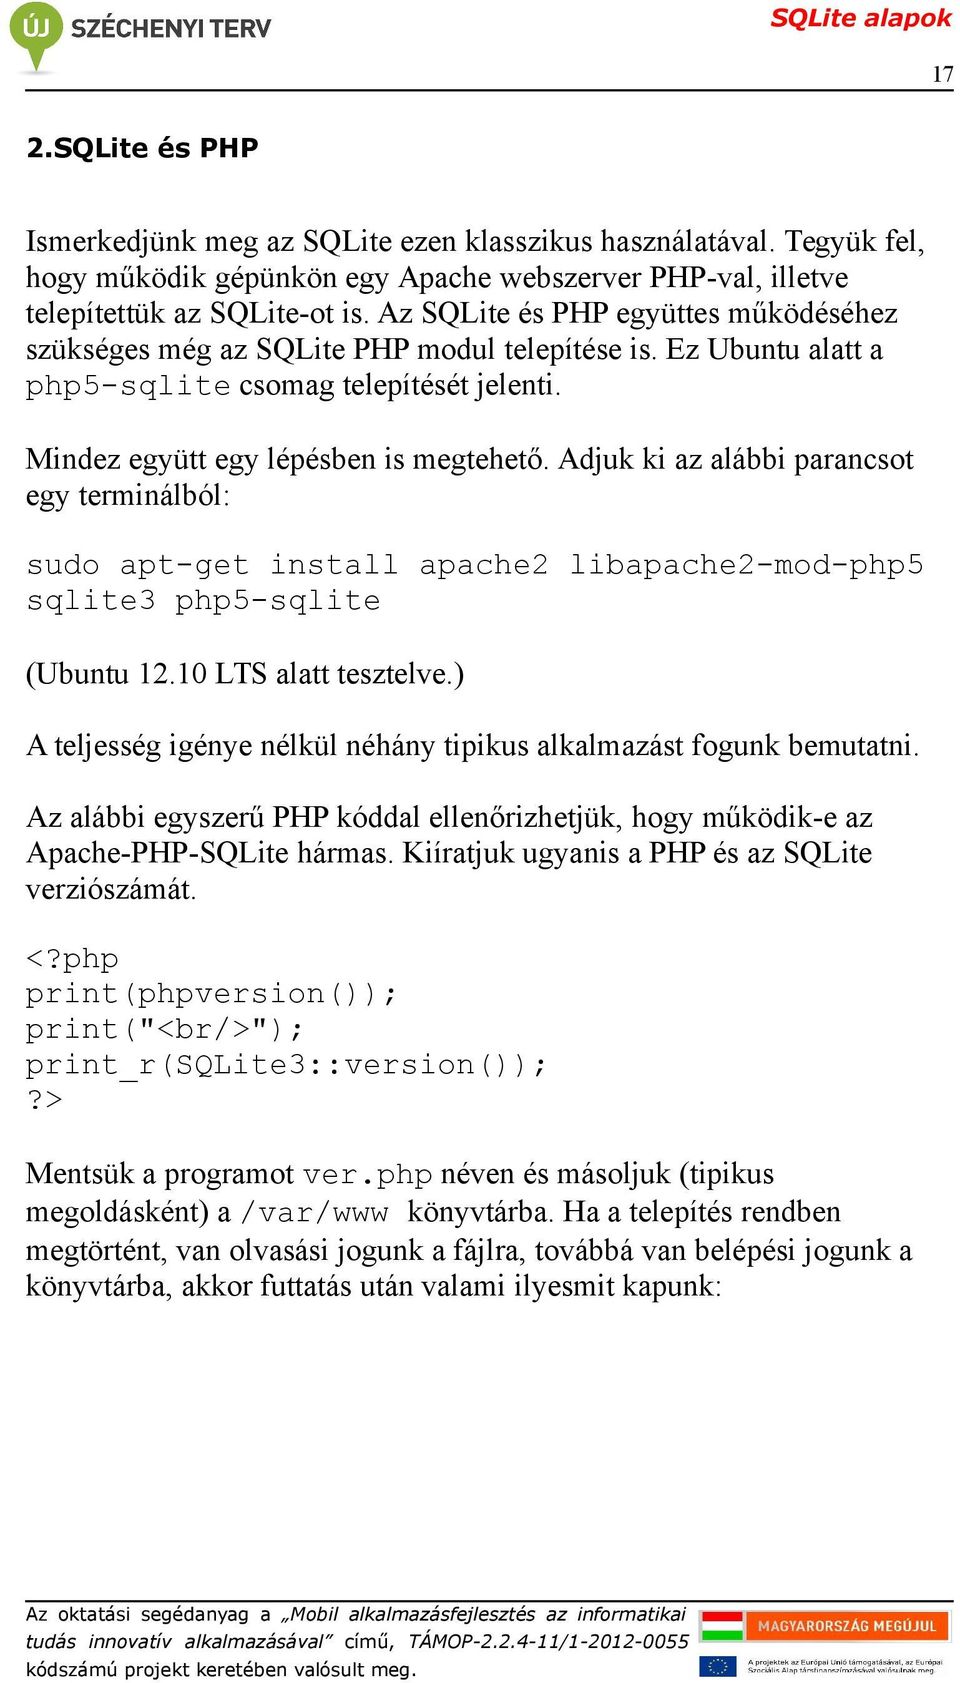 Adjuk ki az alábbi parancsot egy terminálból: sudo apt-get install apache2 libapache2-mod-php5 sqlite3 php5-sqlite (Ubuntu 12.10 LTS alatt tesztelve.